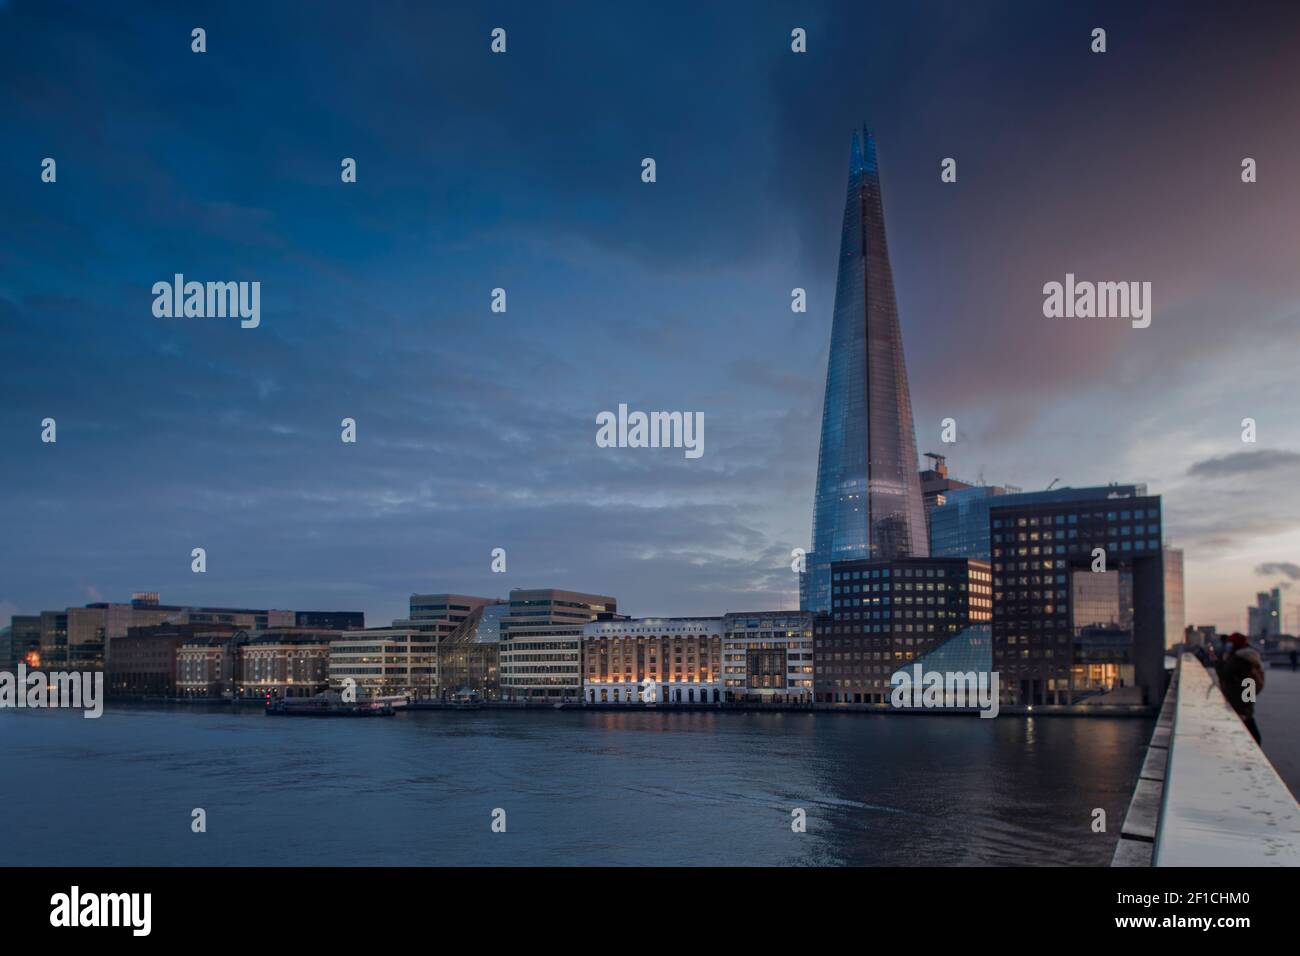 London Bridge, River Thames, Bermondsey area, il grattacielo Shard (architetto: Renzo piano, 2012), persone che guardano il panorama dal ponte, Regno Unito Foto Stock